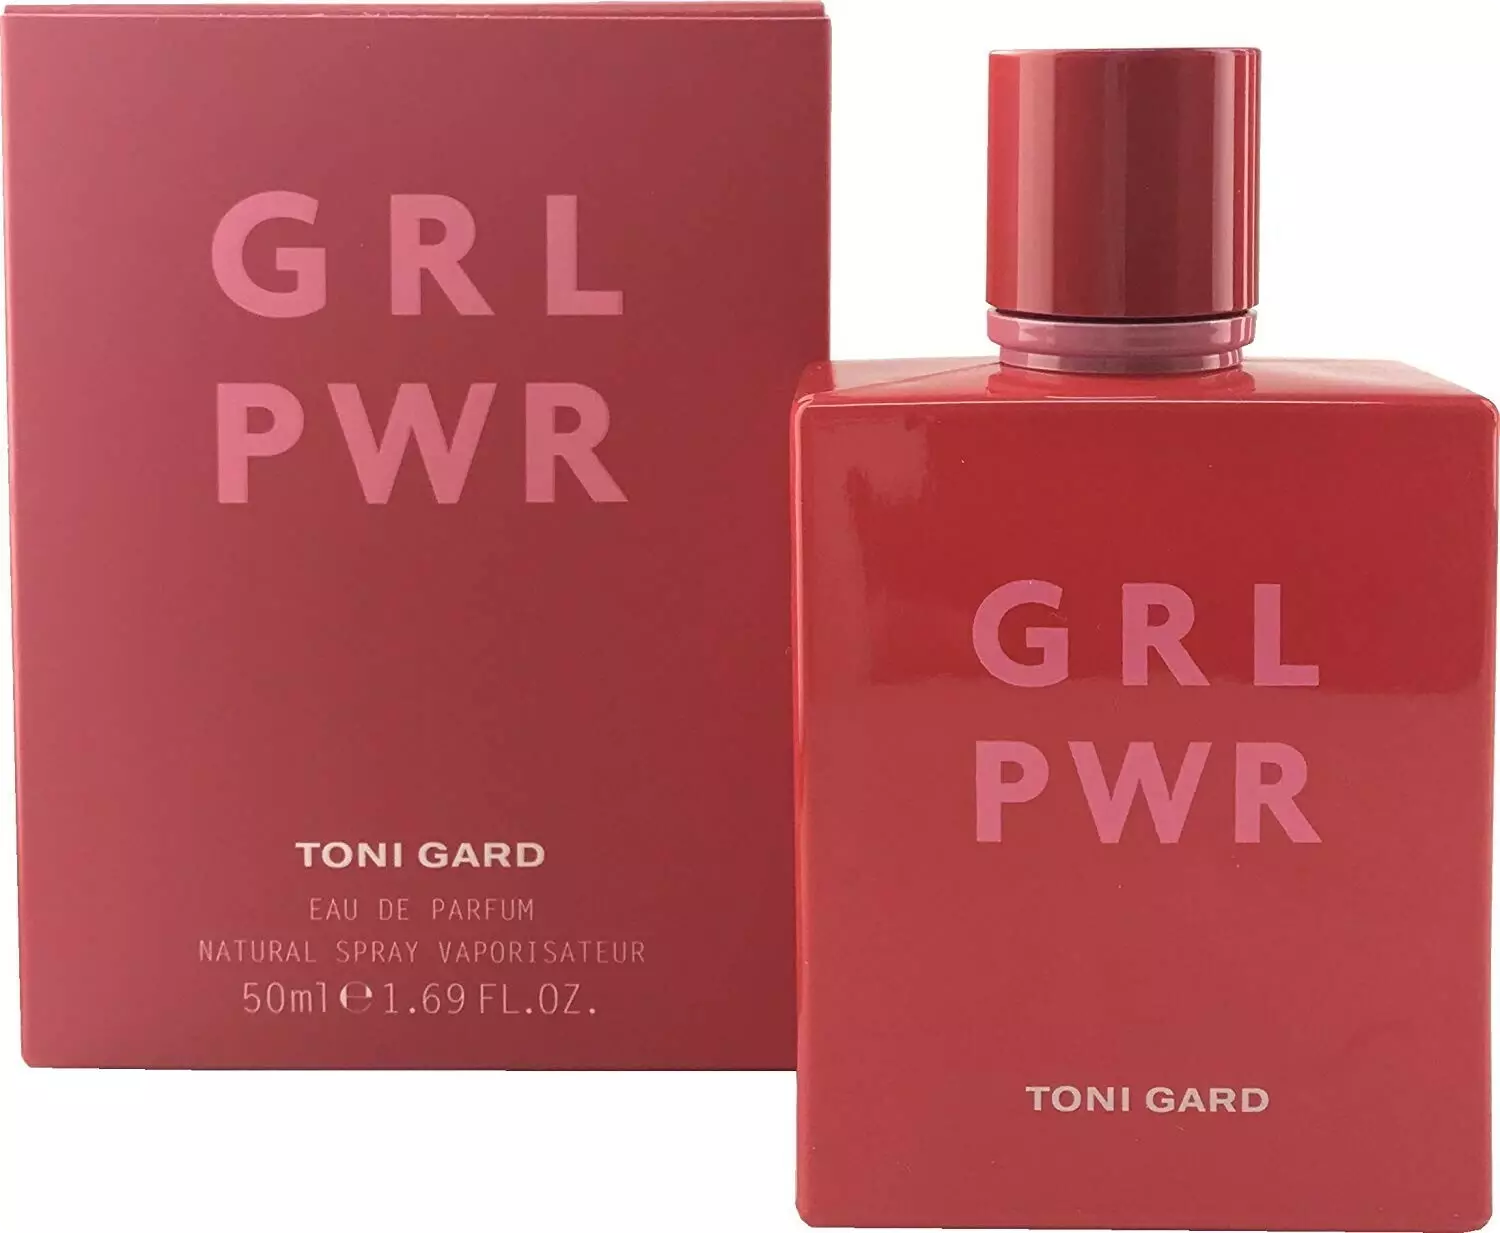 Купить духи Toni Gard Grl Pwr — женская туалетная вода и парфюм Тони Гард  Джи Эр Эл Пи В Эр — цена и описание аромата в интернет-магазине